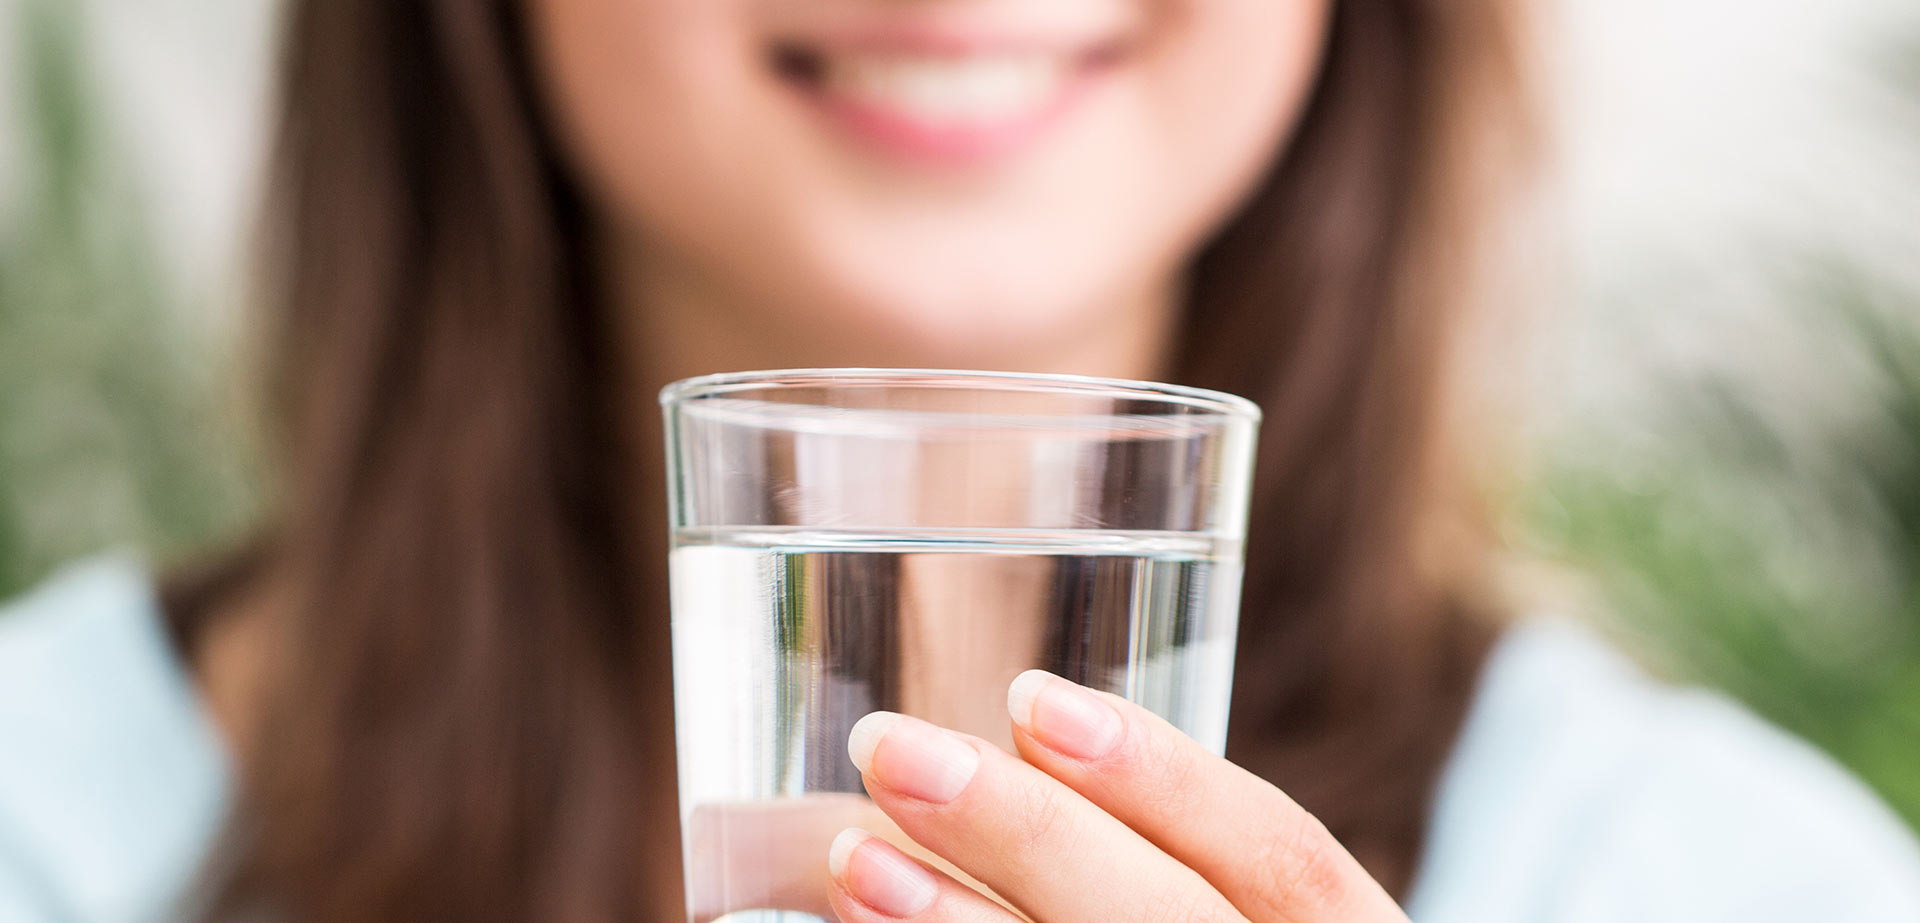 O nawadnianiu organizmu – zacznij tydzień, jak i każdy dzień szklanką wody!